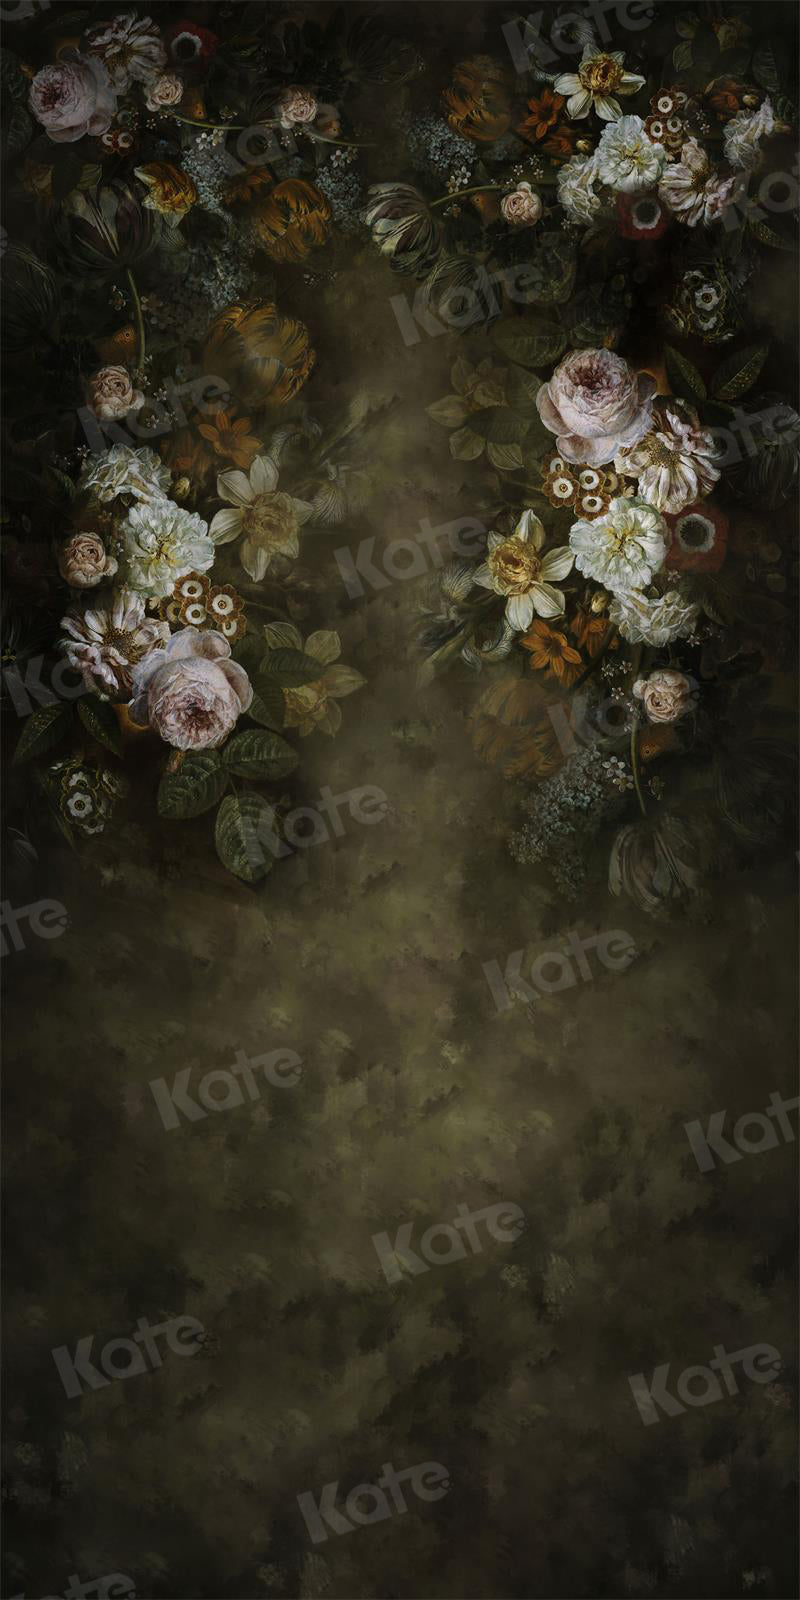 Super Sale-B Kate Sweep Vintage Blumen Boudoir Hintergrund für Fotografie